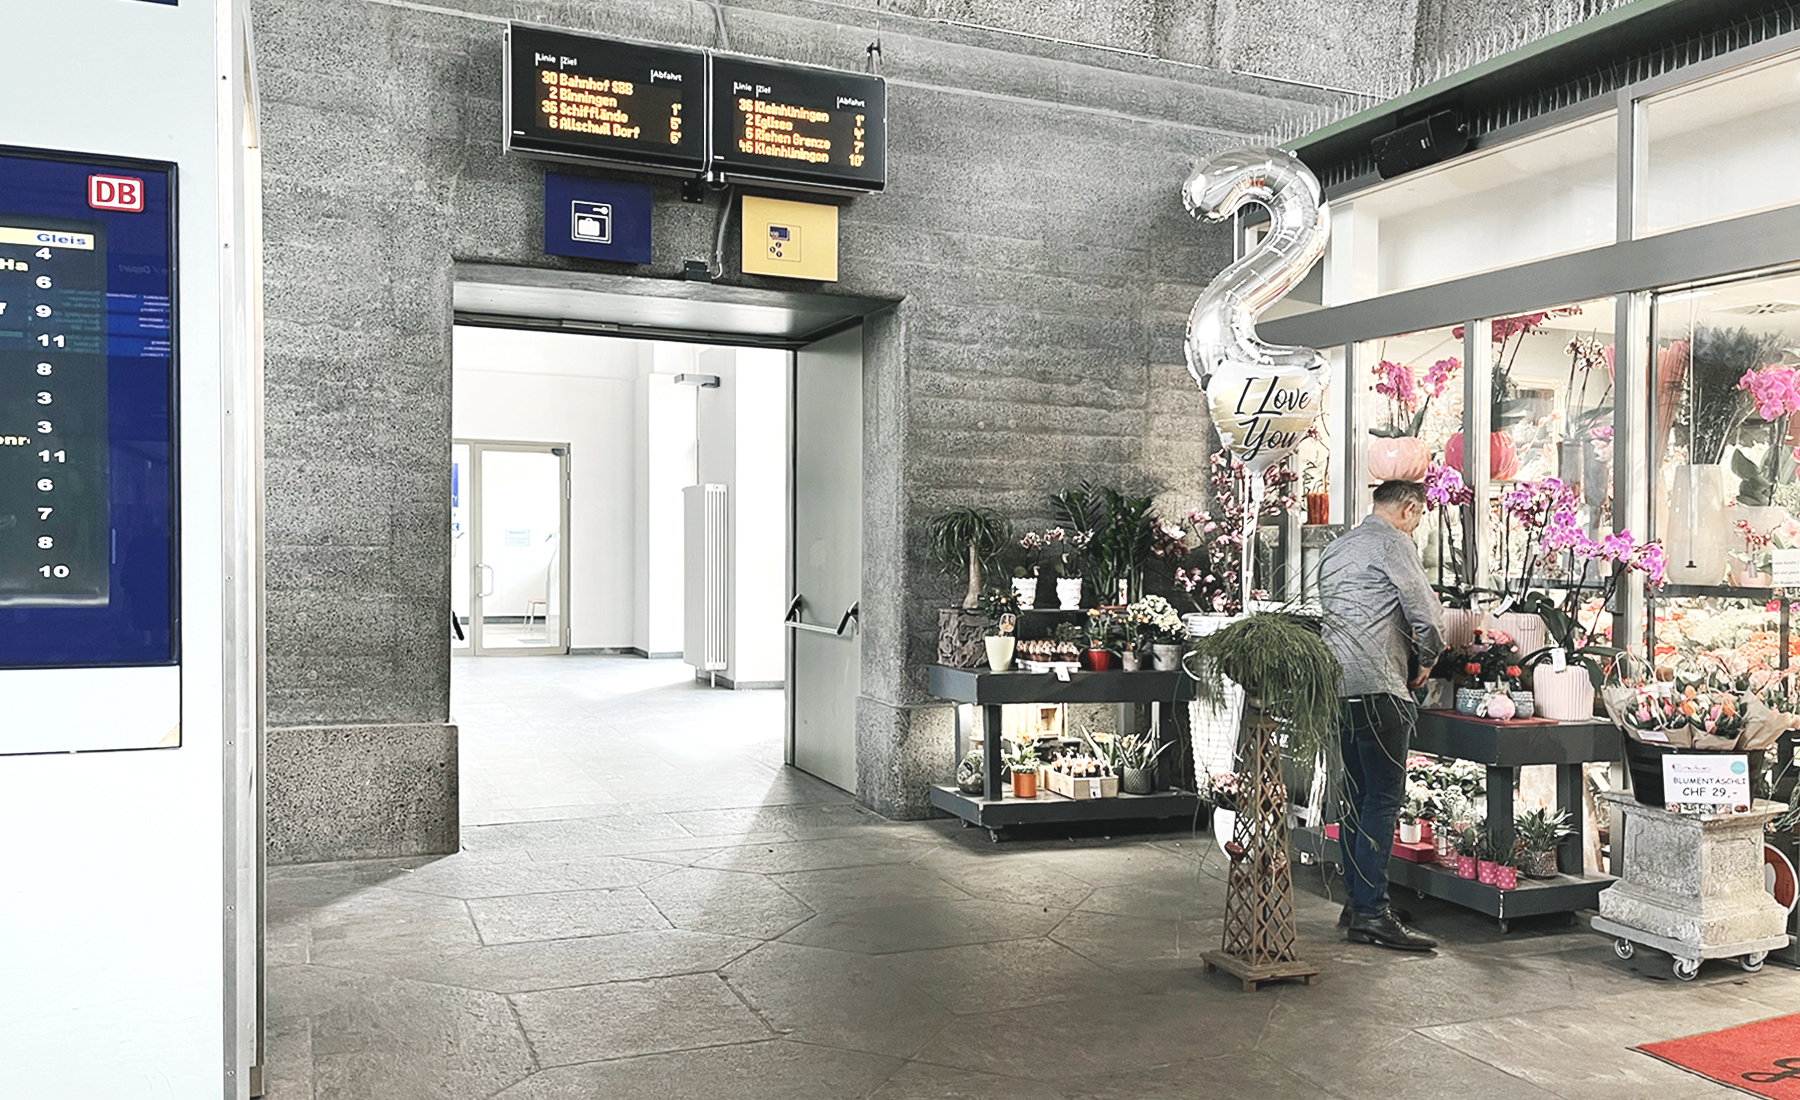 德瑞邊境 Basel Bad Bf 車站，退稅經驗分享 - Travelex 現金退稅